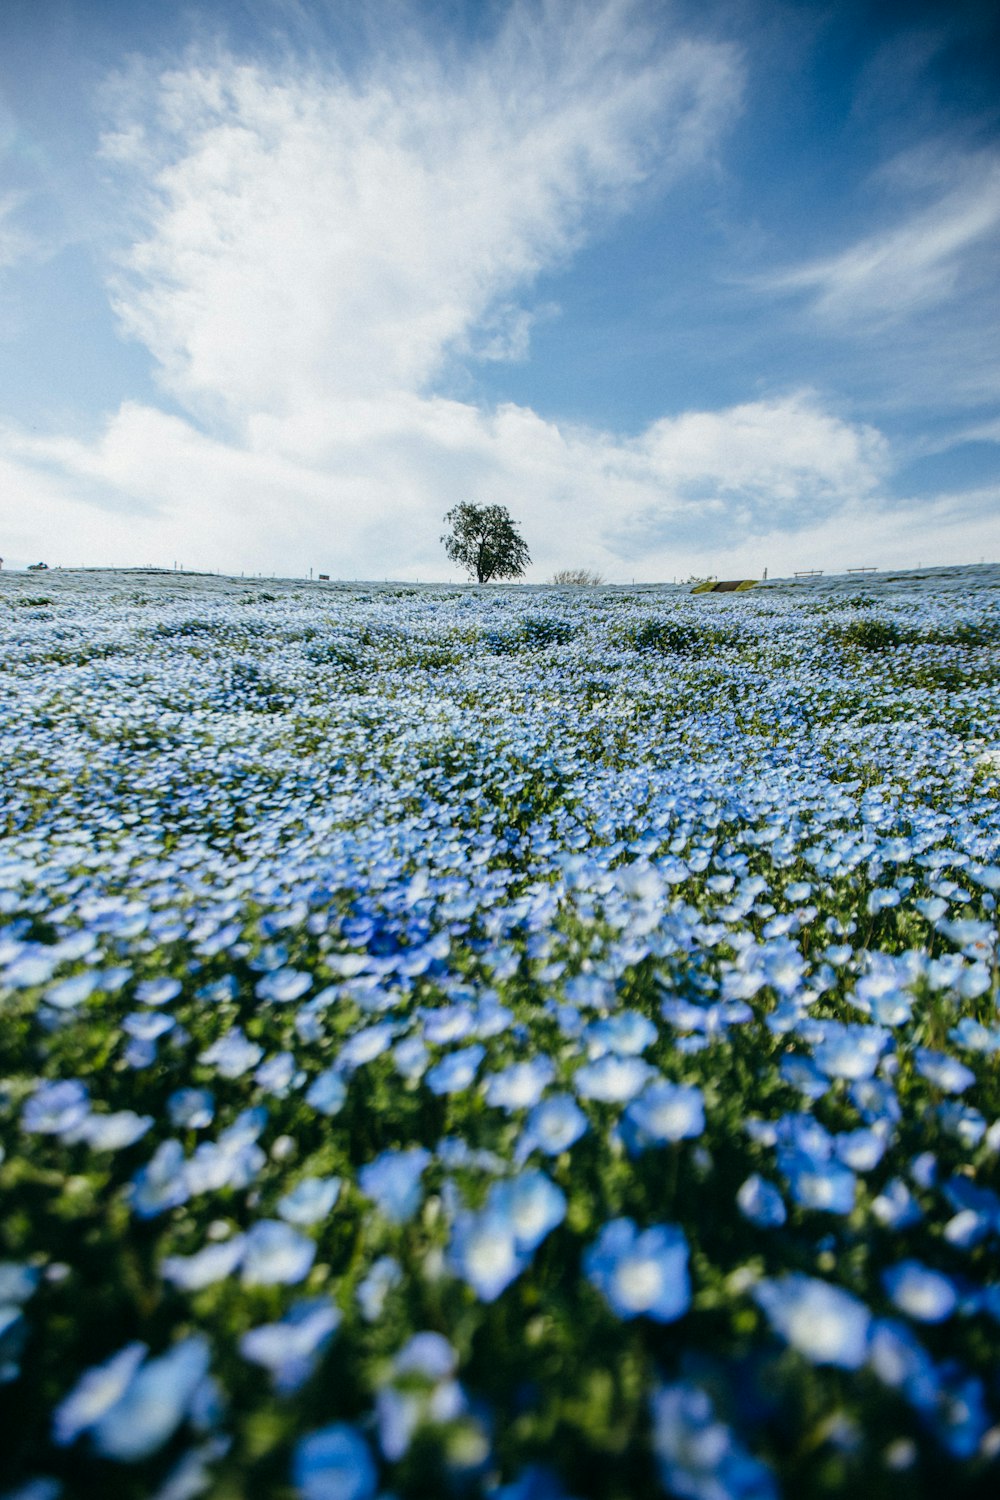 campo de flores azules bajo nubes blancas durante el día